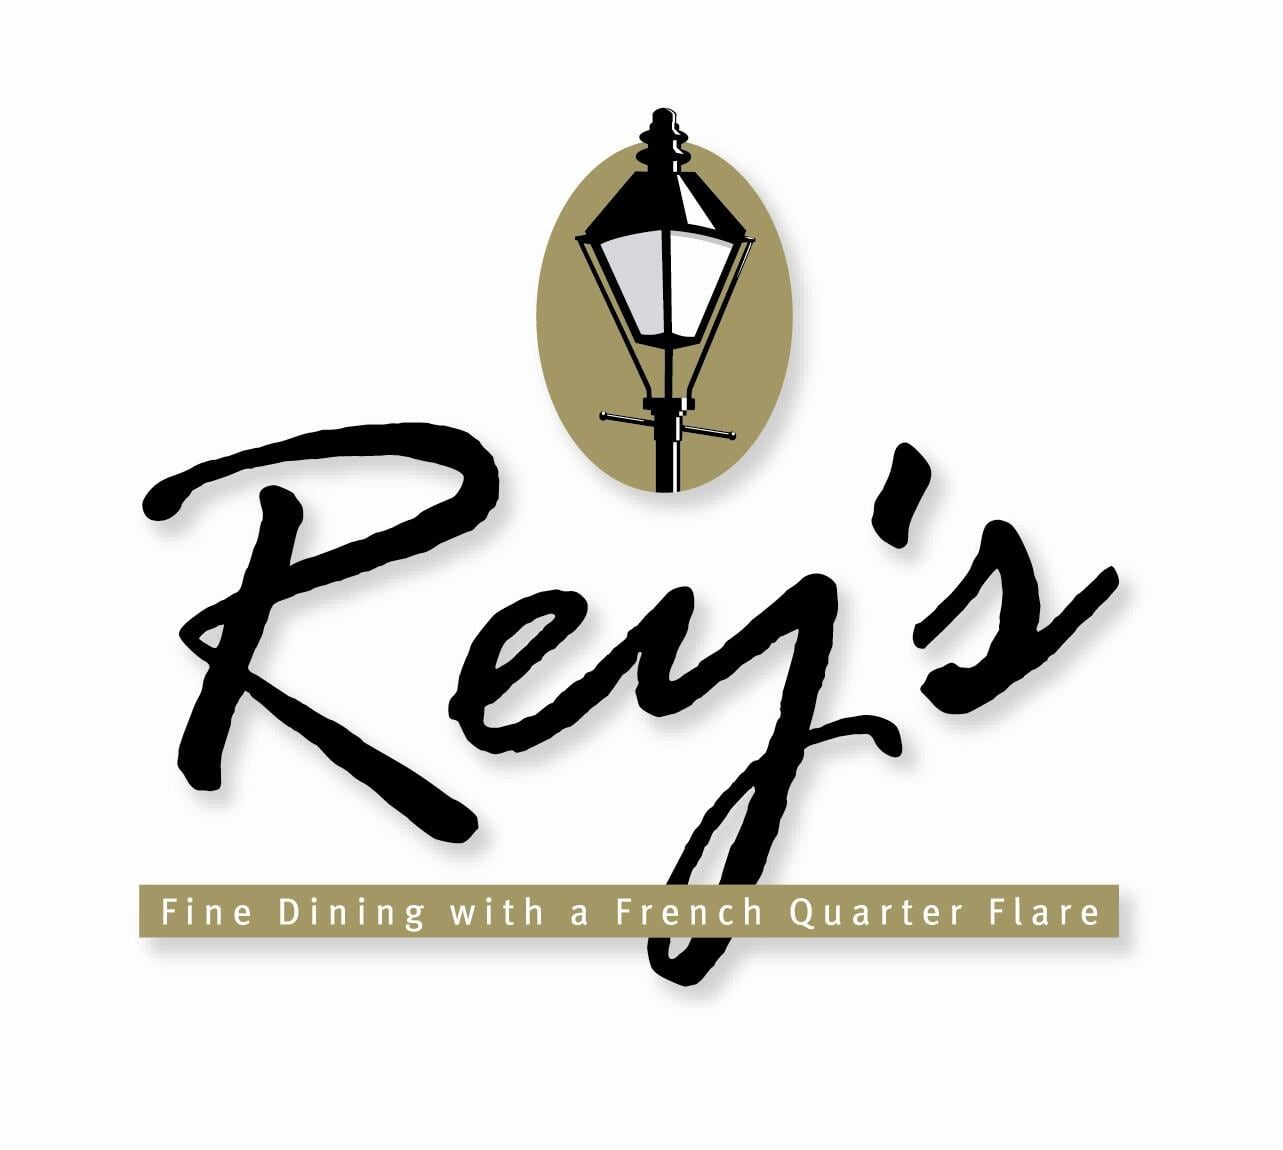 Reys Restaurant interior logo.